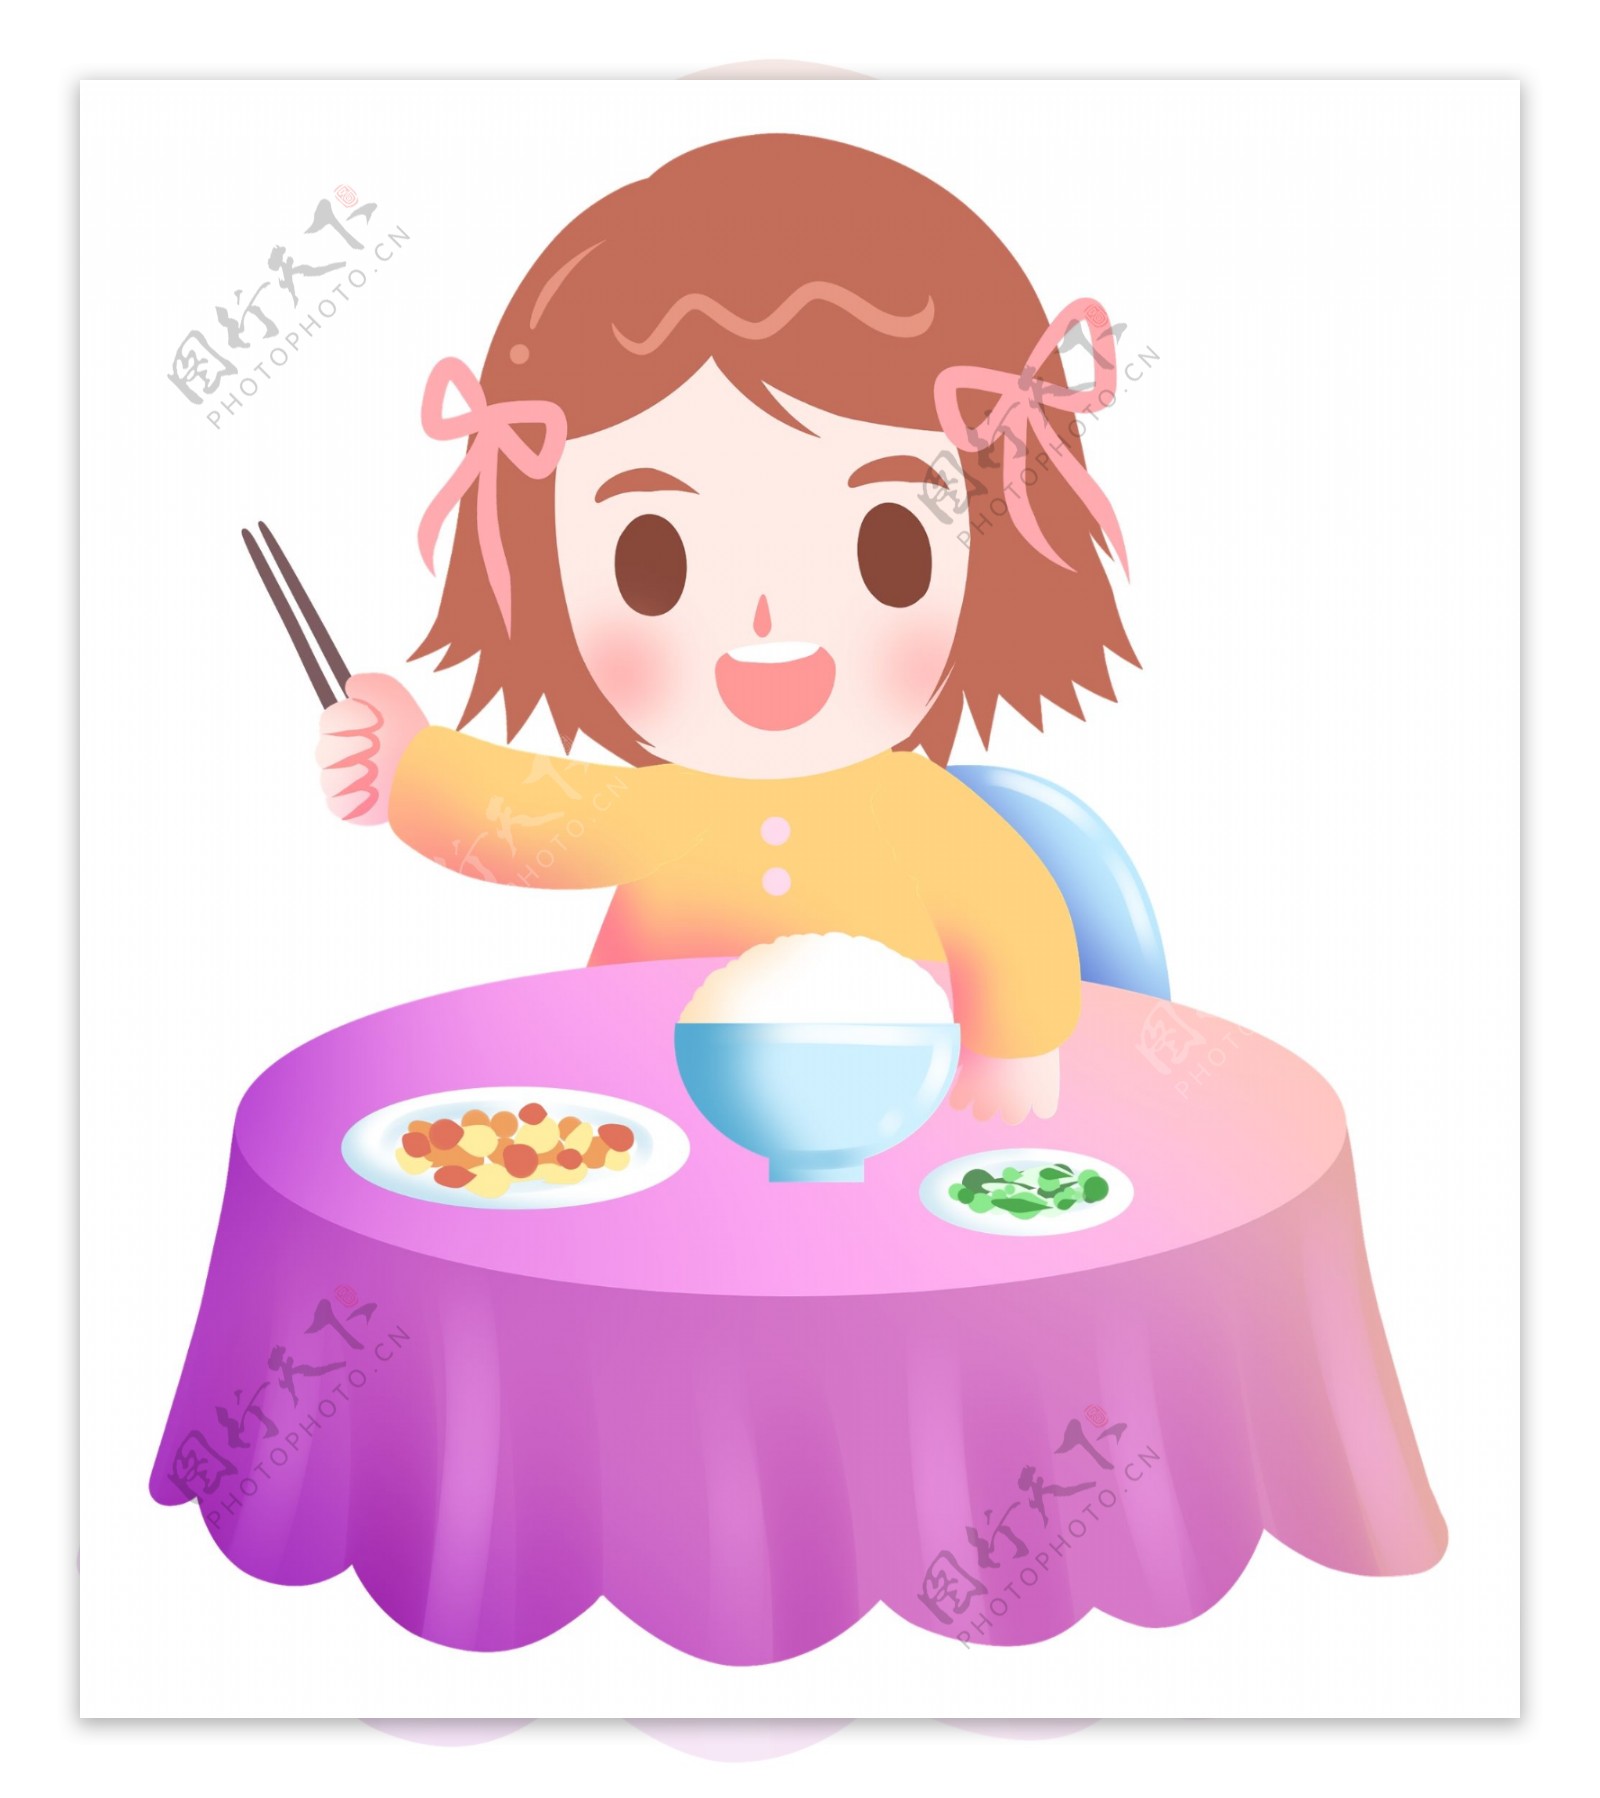 吃米饭的女孩插画